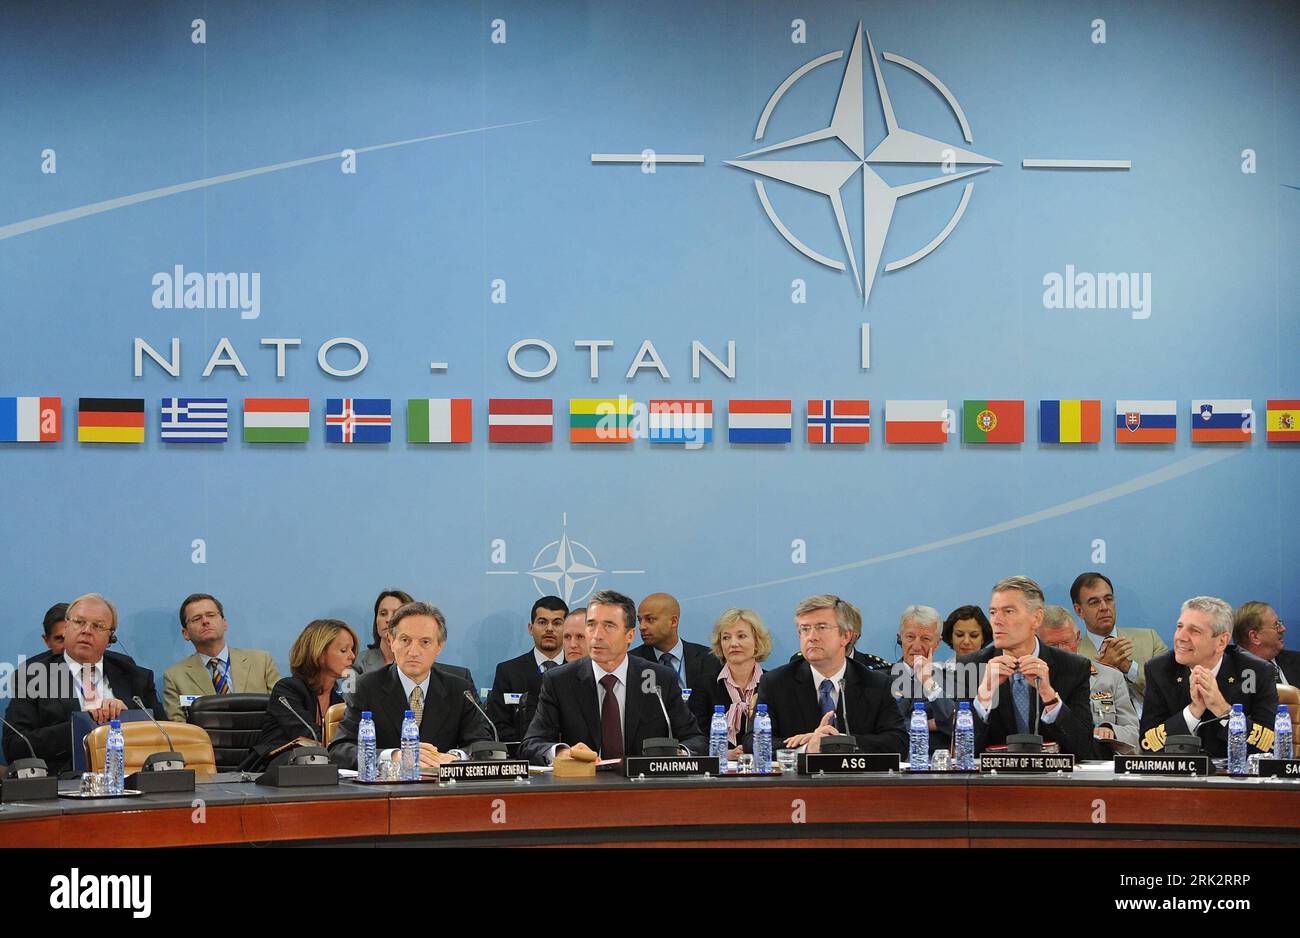 (090804) -- BRÜSSEL, 4. August 2009 (Xinhua) -- neuer NATO-Generalsekretär anders Fogh Rasmussen (C, Front) führt den Vorsitz über die erste Tagung des Nordatlantikrates während seiner Amtszeit im NATO-Hauptquartier in Brüssel, Belgien, am 4. August 2009. Rasmussen begann seinen ersten Tag als NATO-Chef am Montag. Rasmussens Amtszeit begann offiziell am 1. August. (Xinhua/Wu Wei) (wjd) (3)BELGIEN-NATO-RASMUSSEN-MEETING PUBLICATIONxNOTxINxCHN Stockfoto